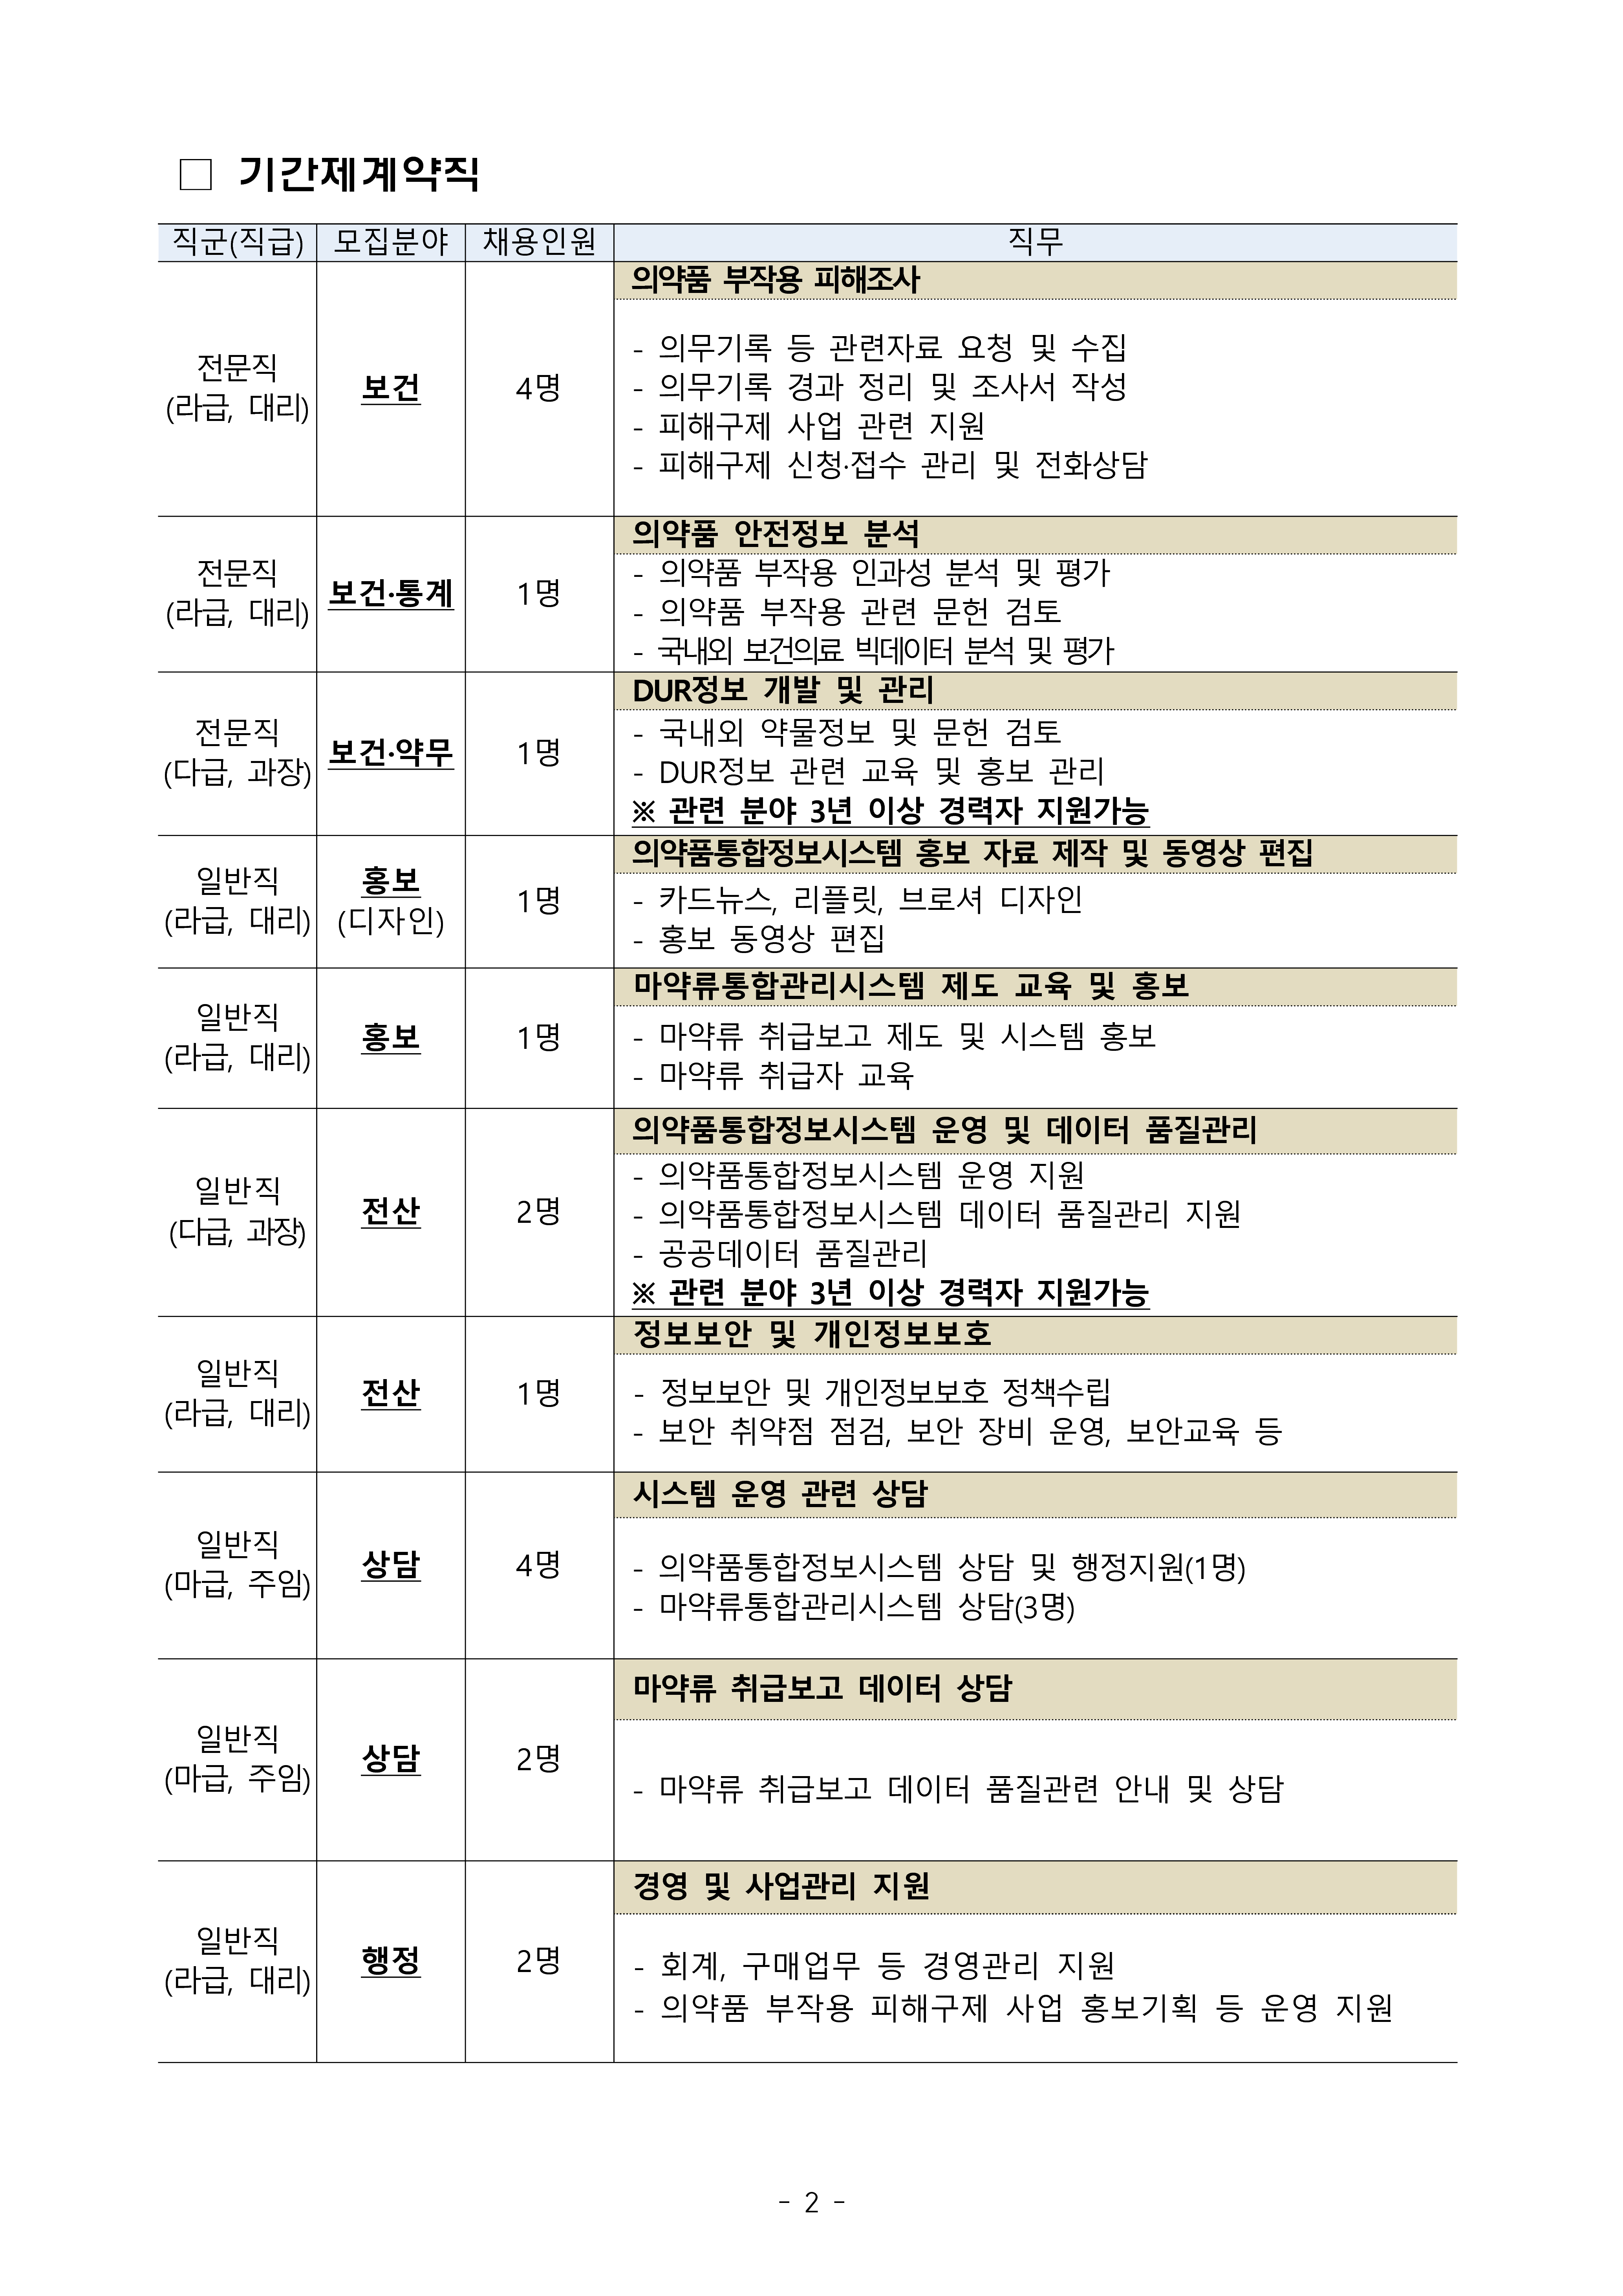 한국의약품안전관리원_2020년 7차 채용 공고문(게시)_2.png